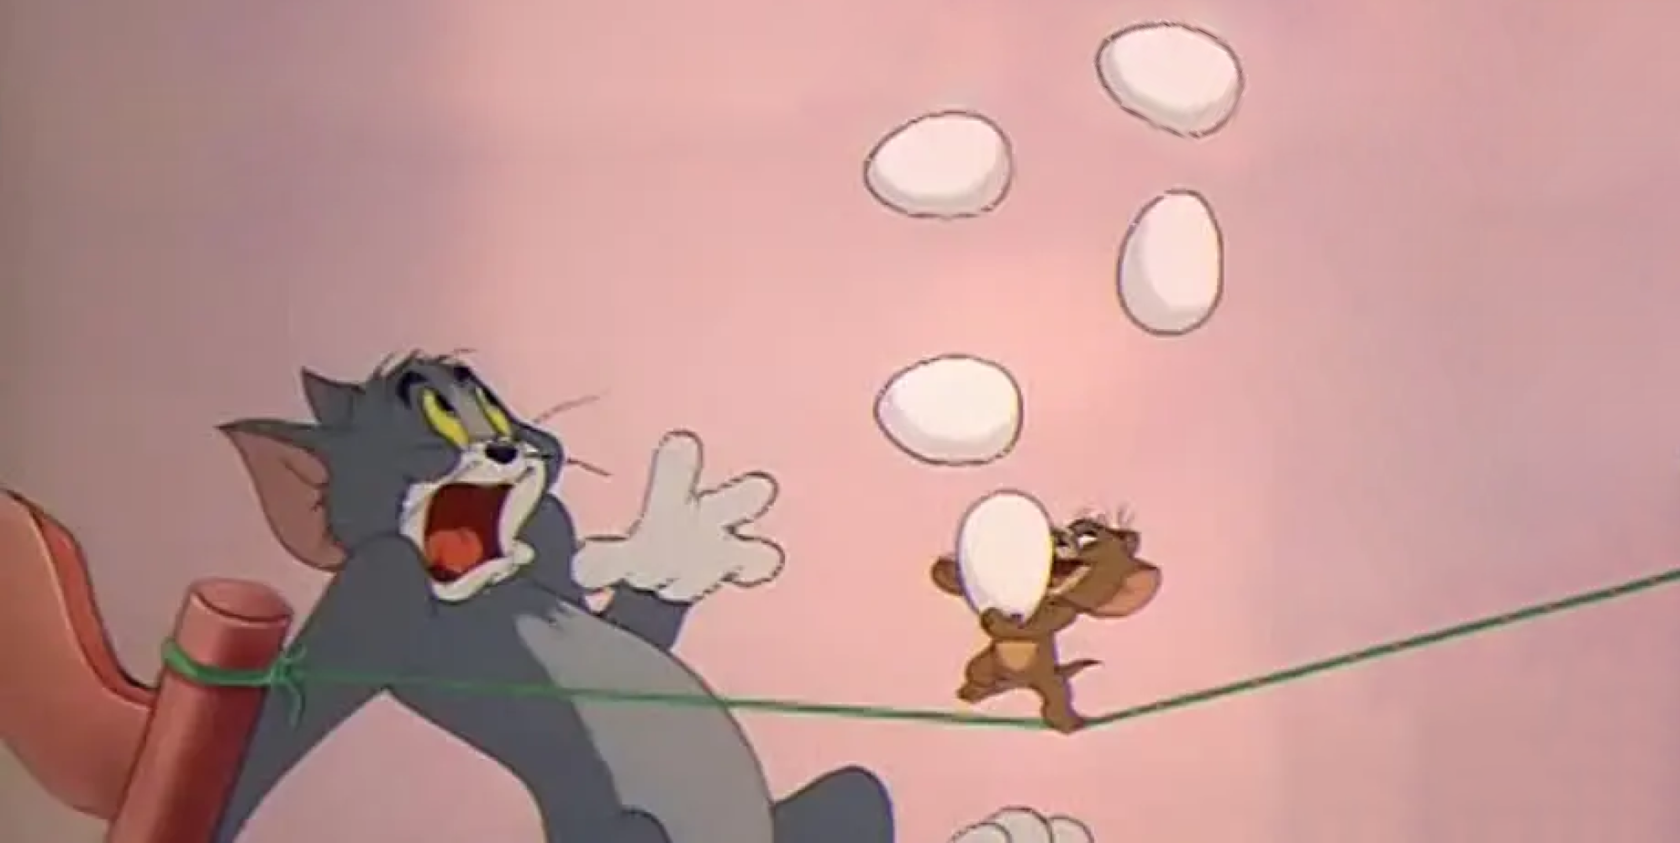 Том и Джерри Hanna Barbera. Tom and Jerry 038 Mouse. Режиссер тома и джерри